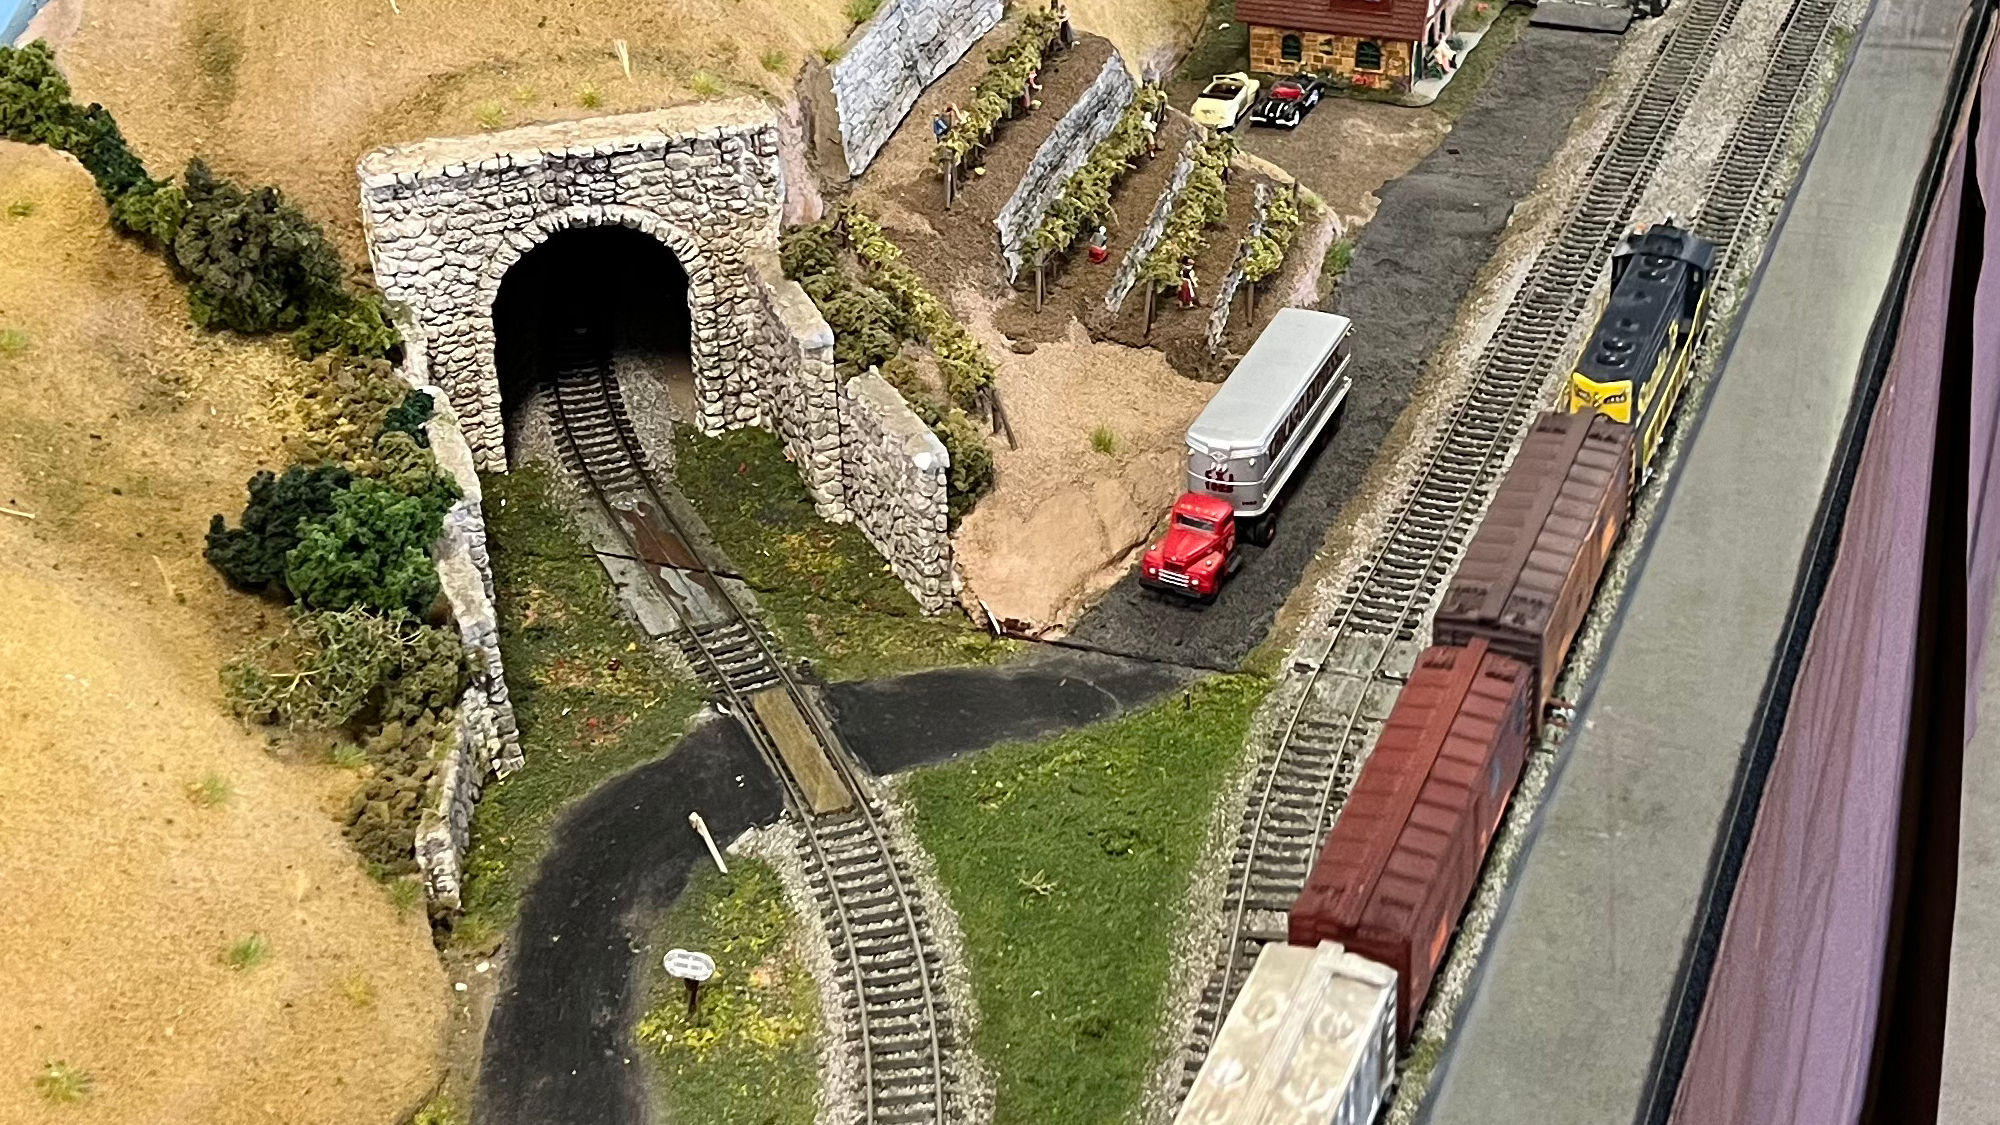 Model Railroad Tunnel